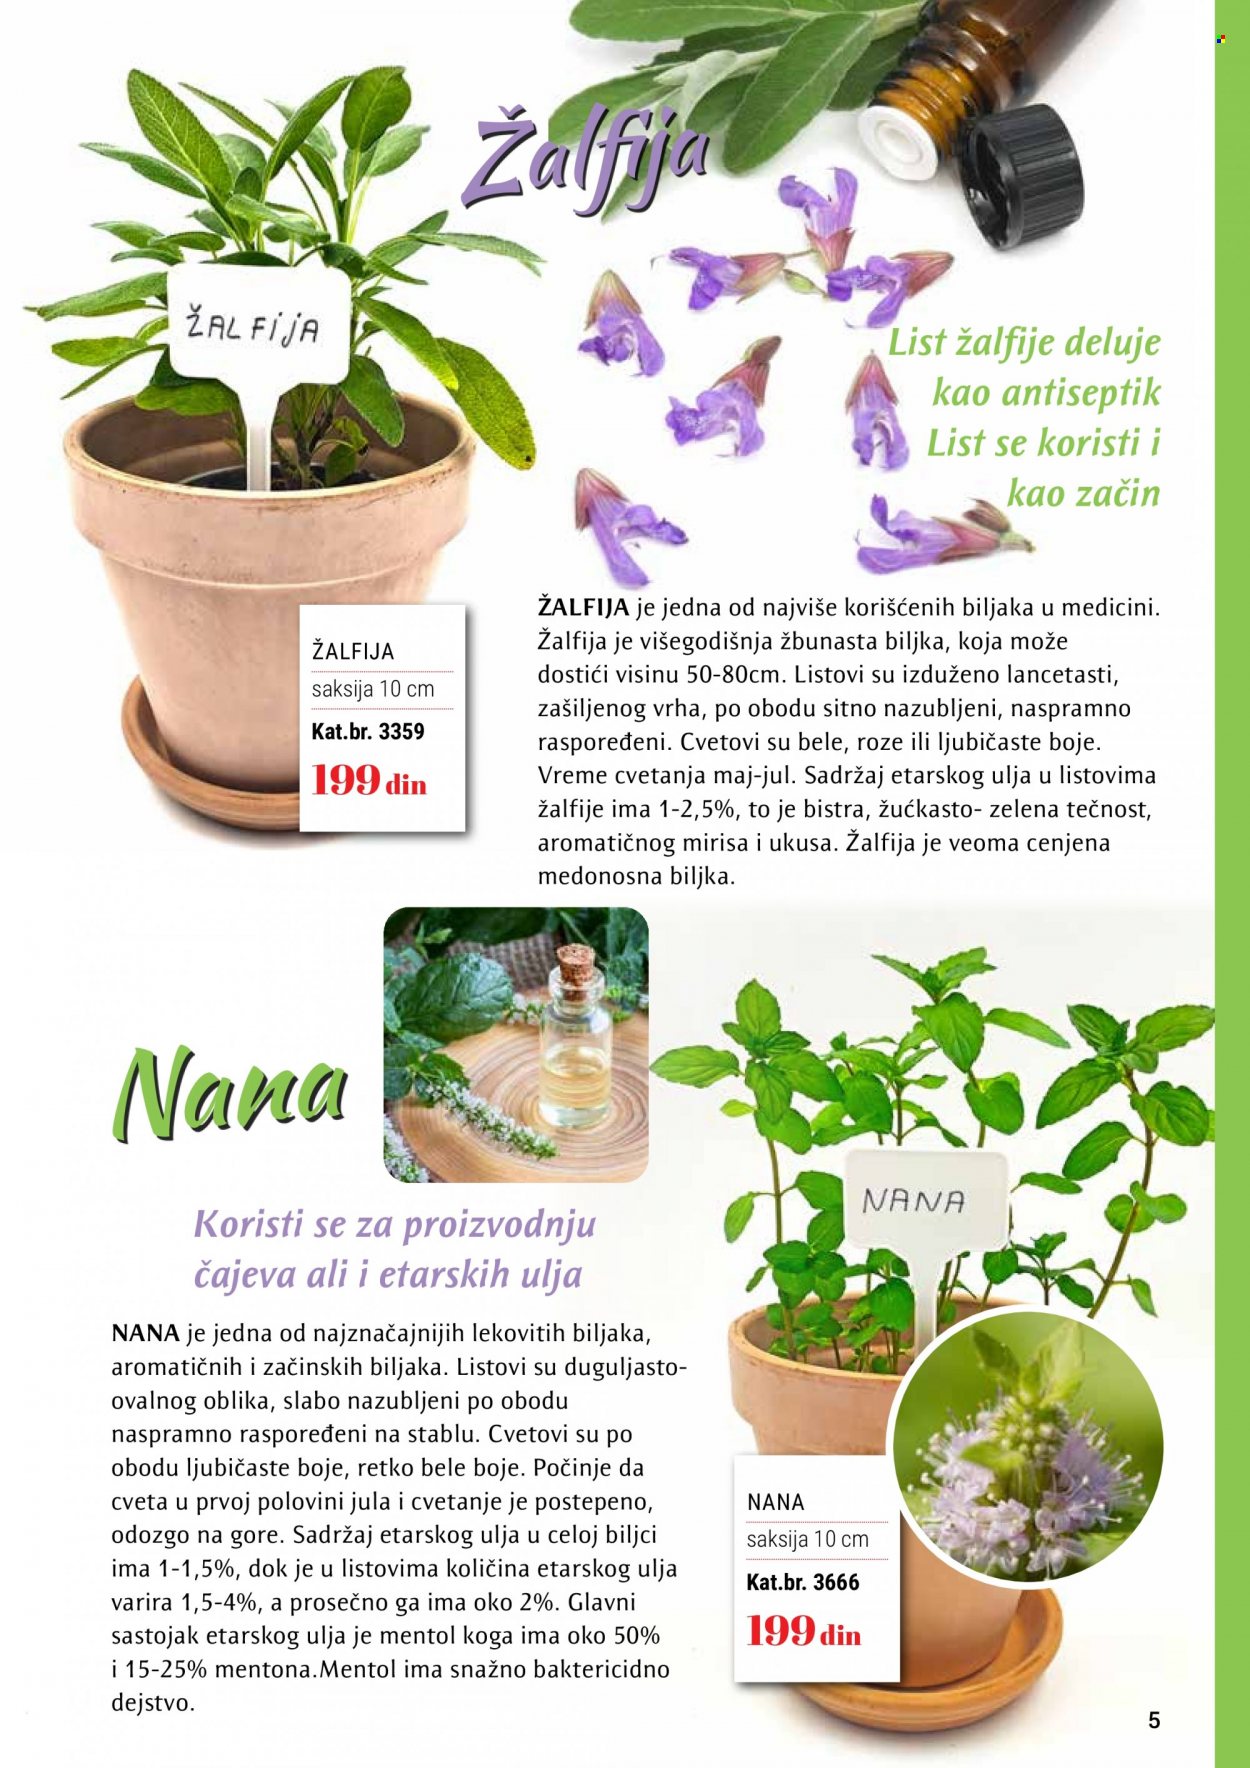 Flora Ekspres katalog.